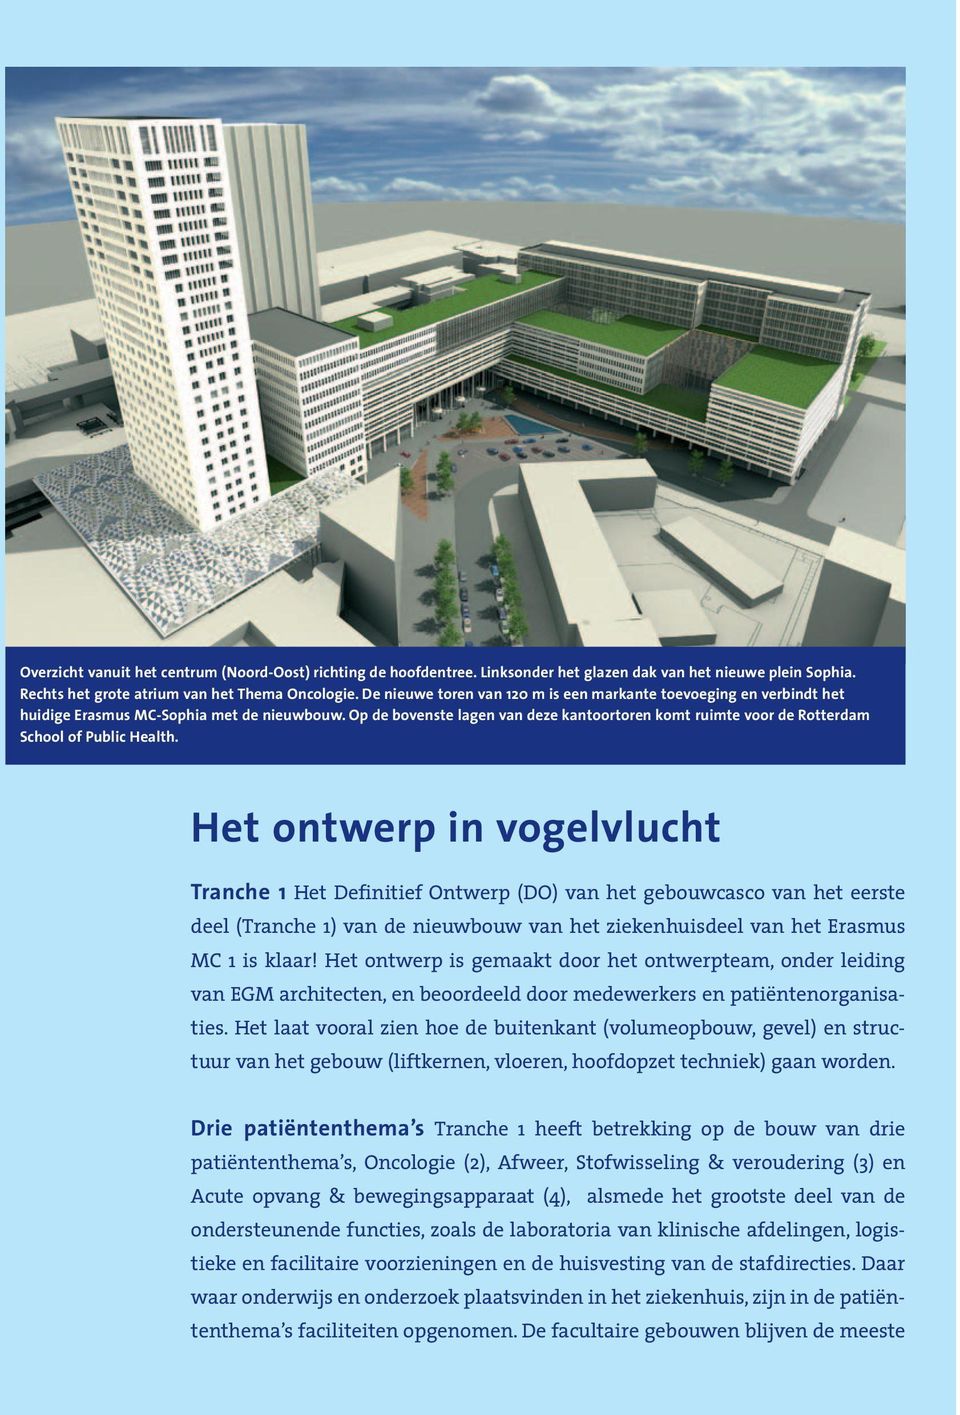 Op de bovenste lagen van deze kantoortoren komt ruimte voor de Rotterdam School of Public Health.